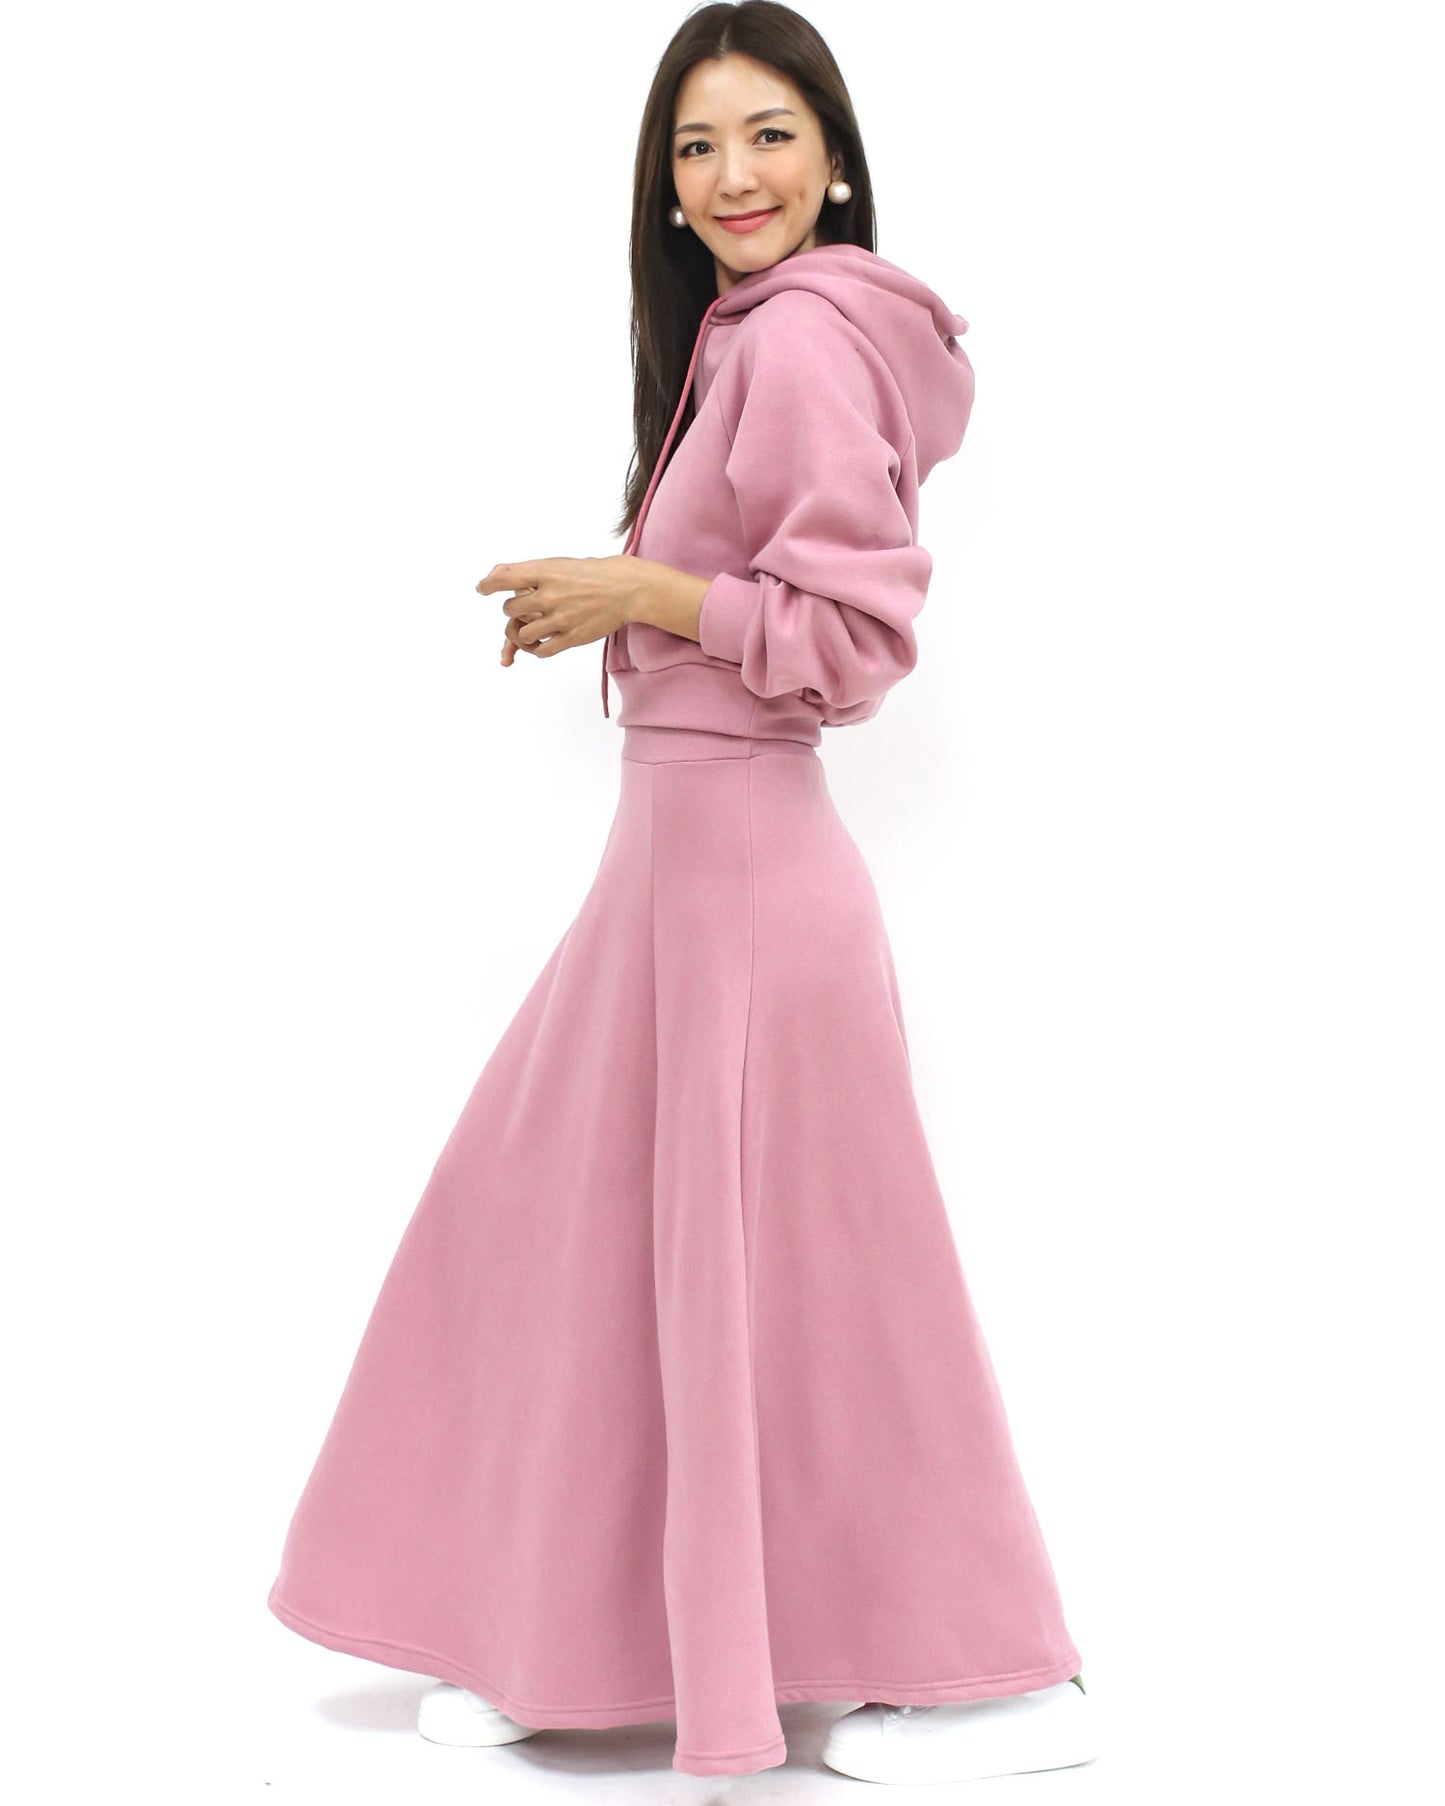 粉紅色連帽衫抓絨運動衫和裙子​​套裝*預購*